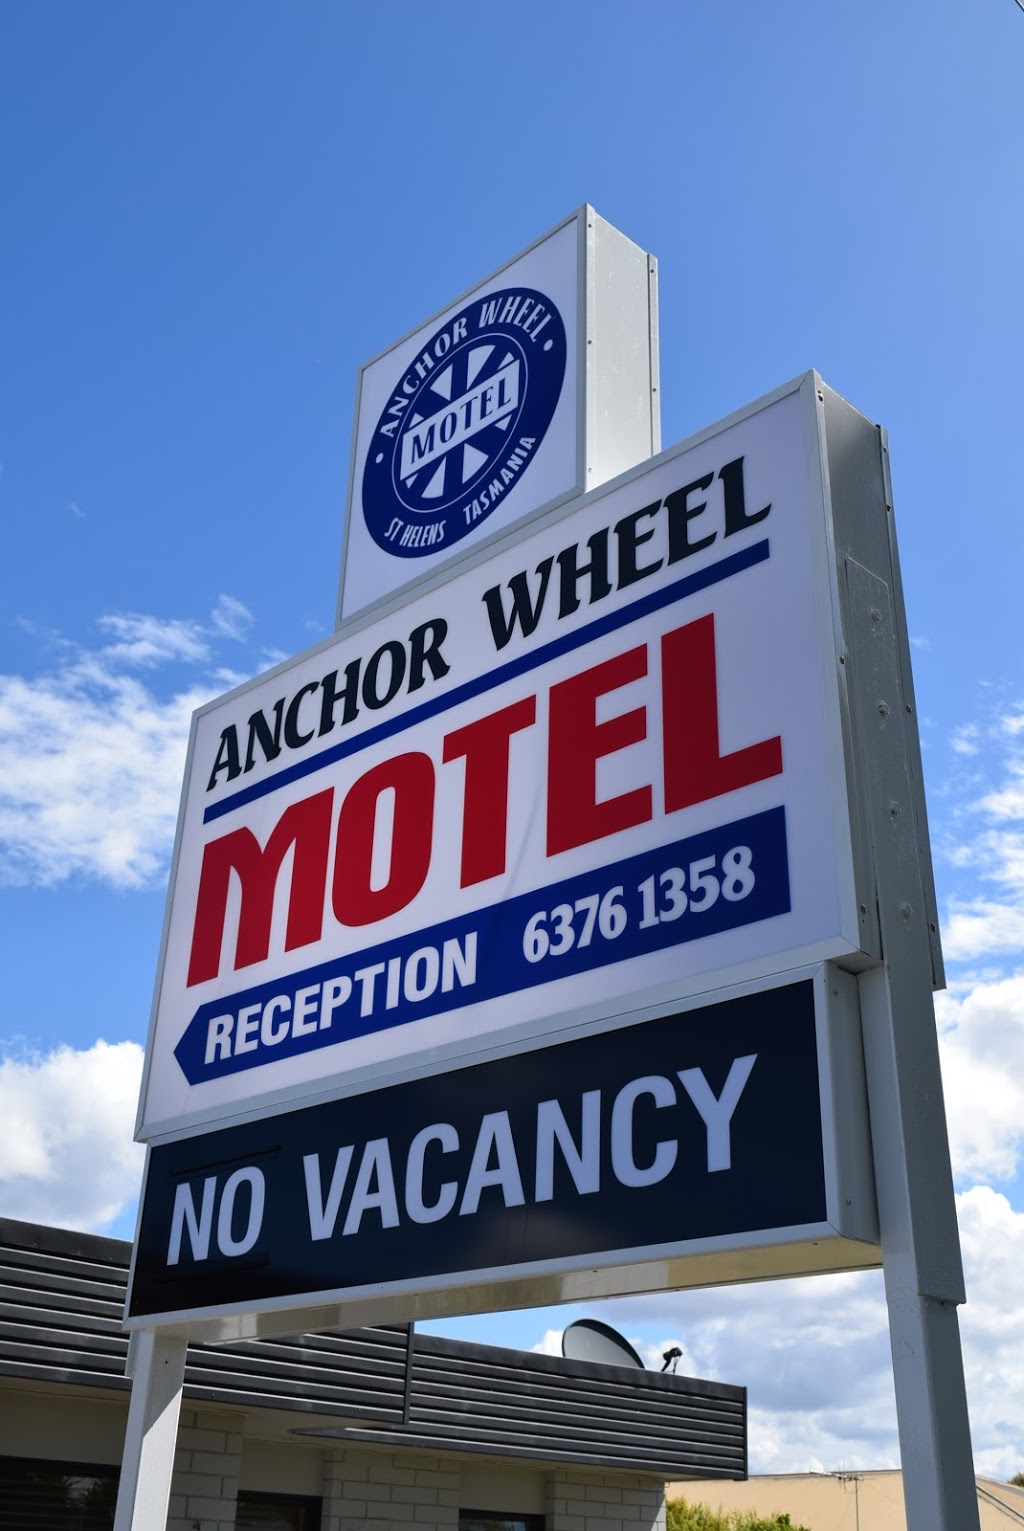 Anchor Wheel Motel | lodging | 59 Tully St, St Helens TAS 7216, Australia | 0363761358 OR +61 3 6376 1358